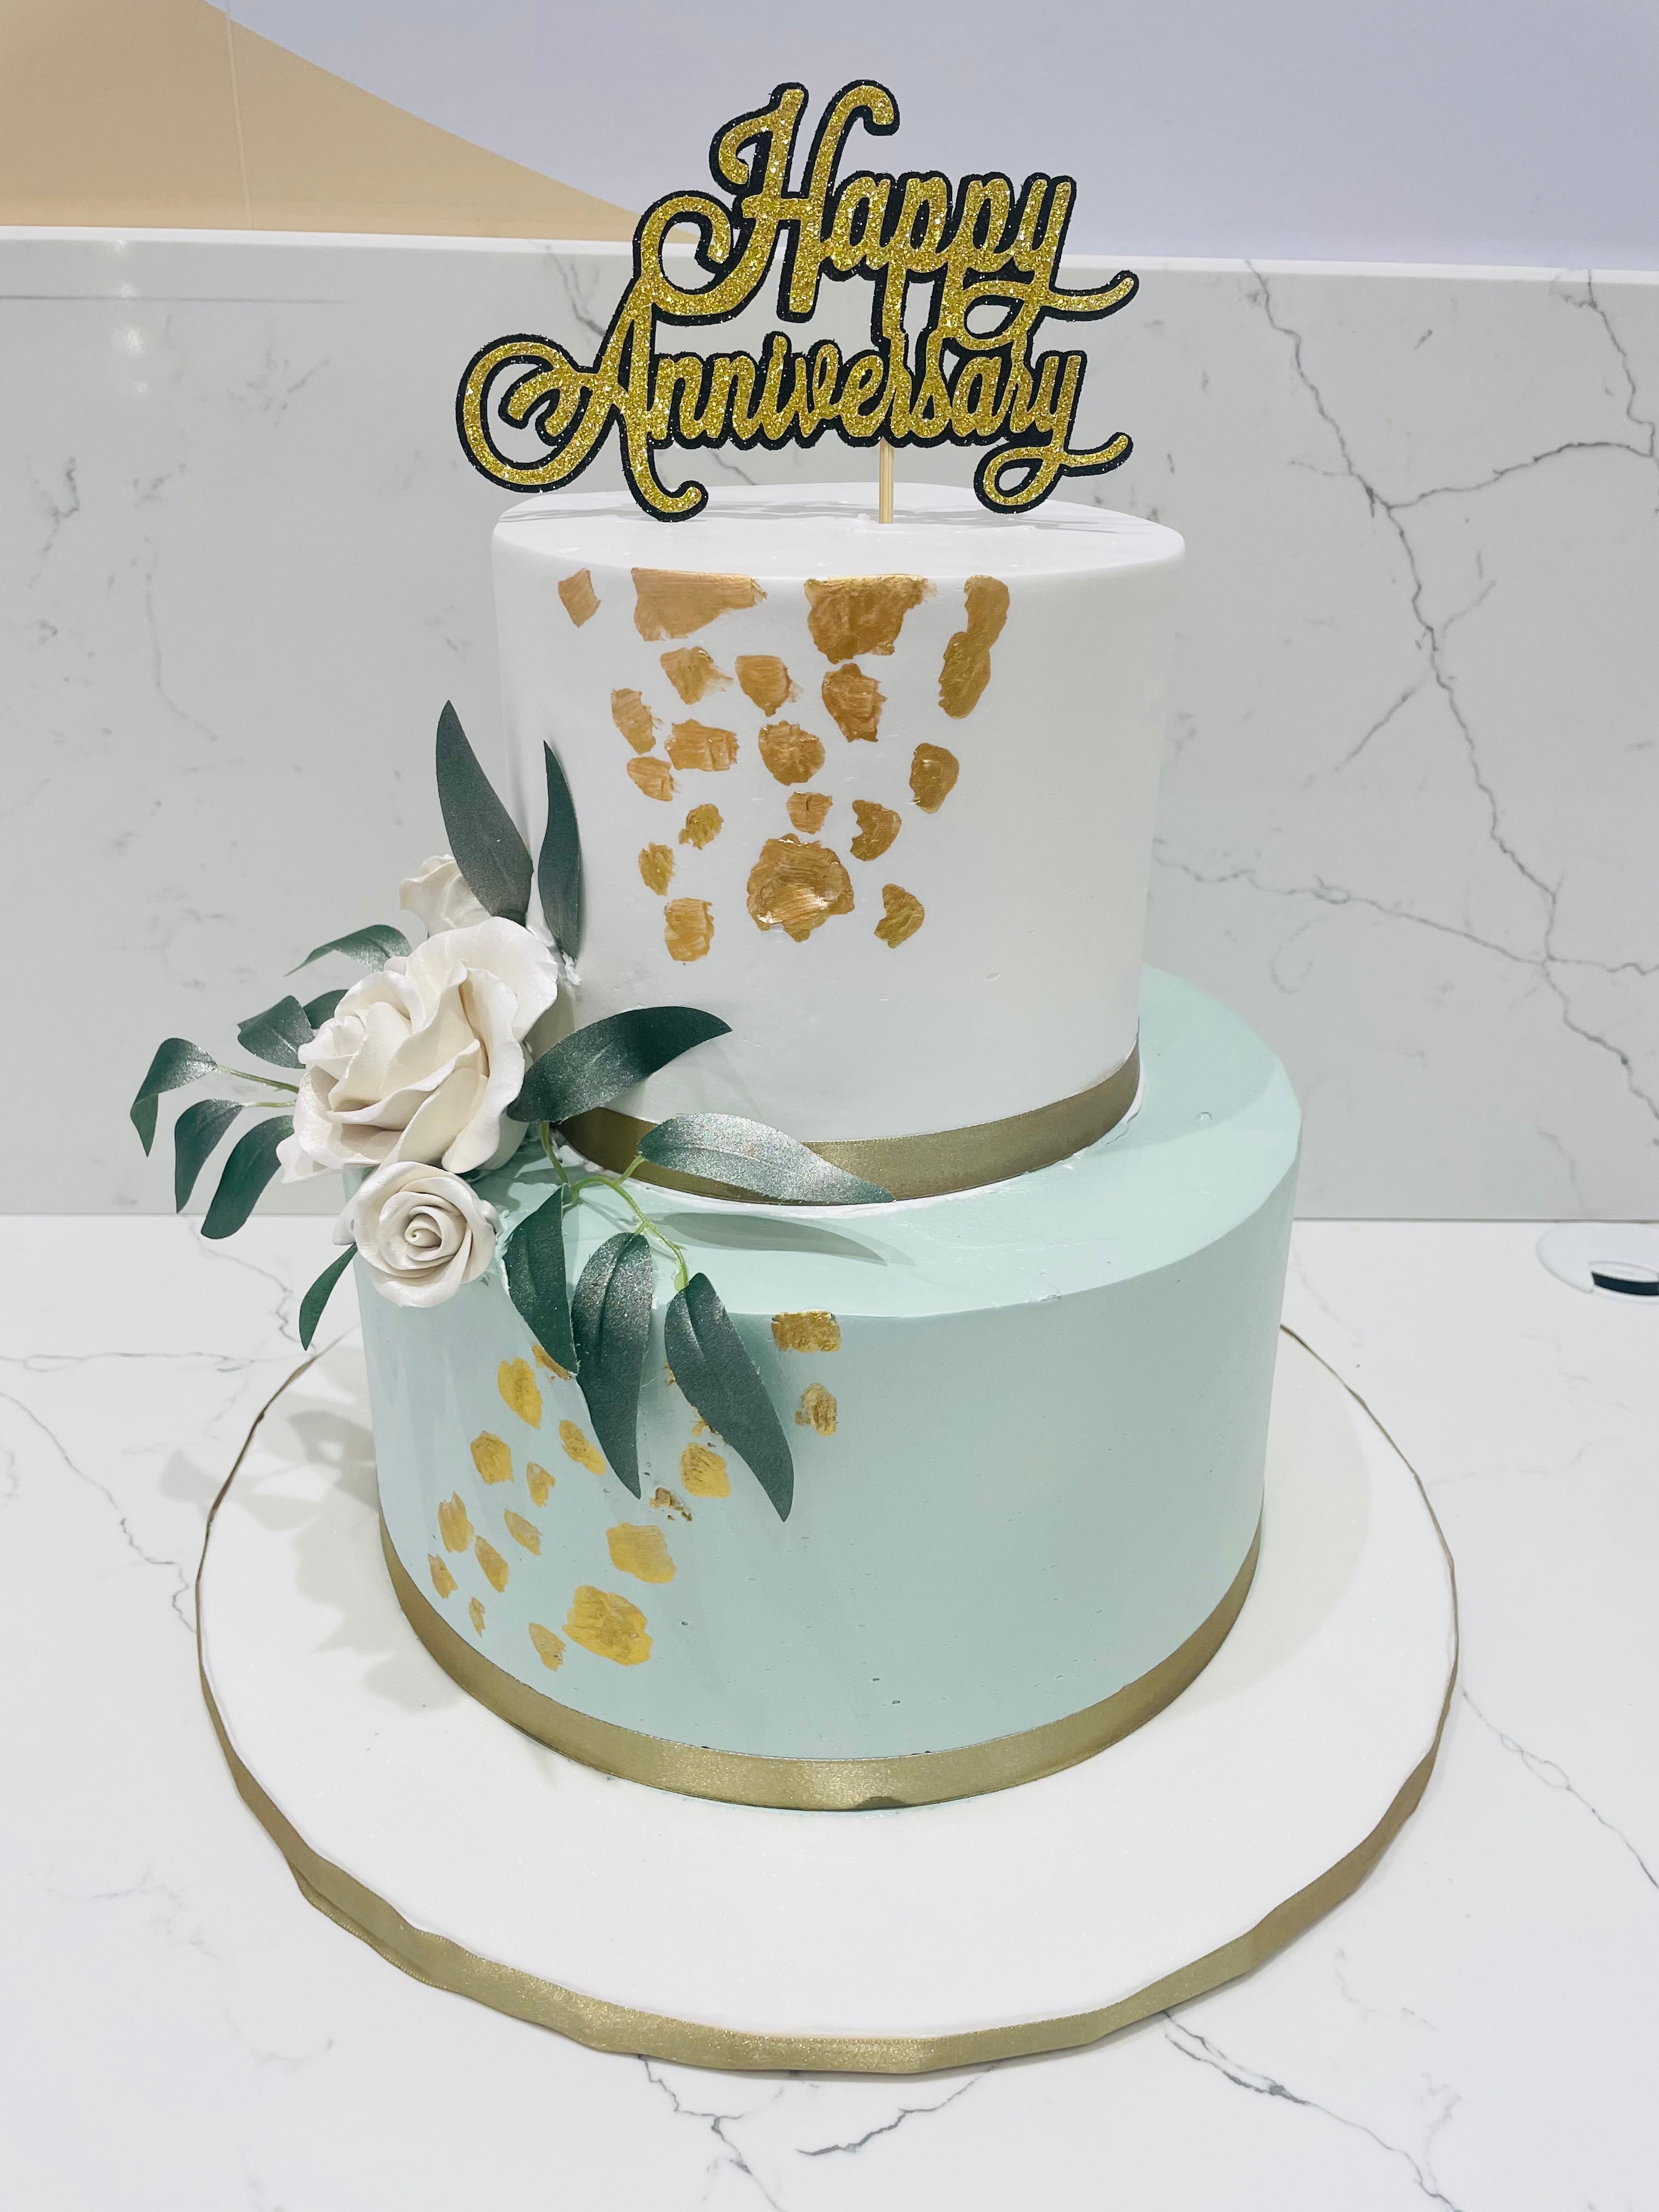 2 tier Anniversary cake - classic-cakes.com